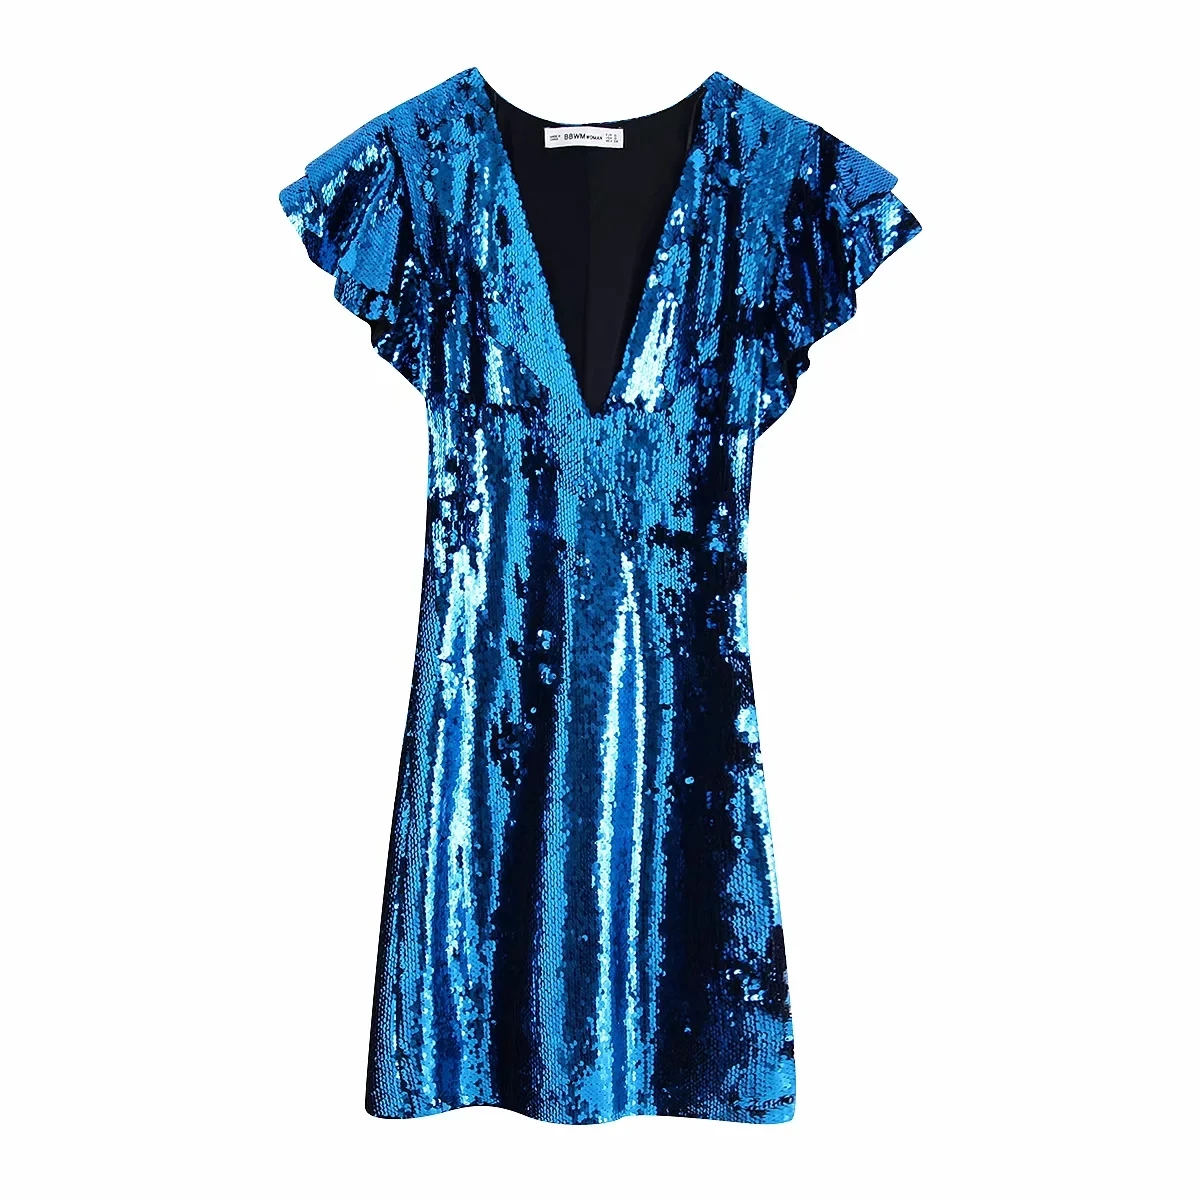 Женское платье ZA,, синее, с блестками, с рюшами, шикарное, для девушек, облегающее, элегантное, мини, для клуба, для вечеринки, платье для женщин, платья